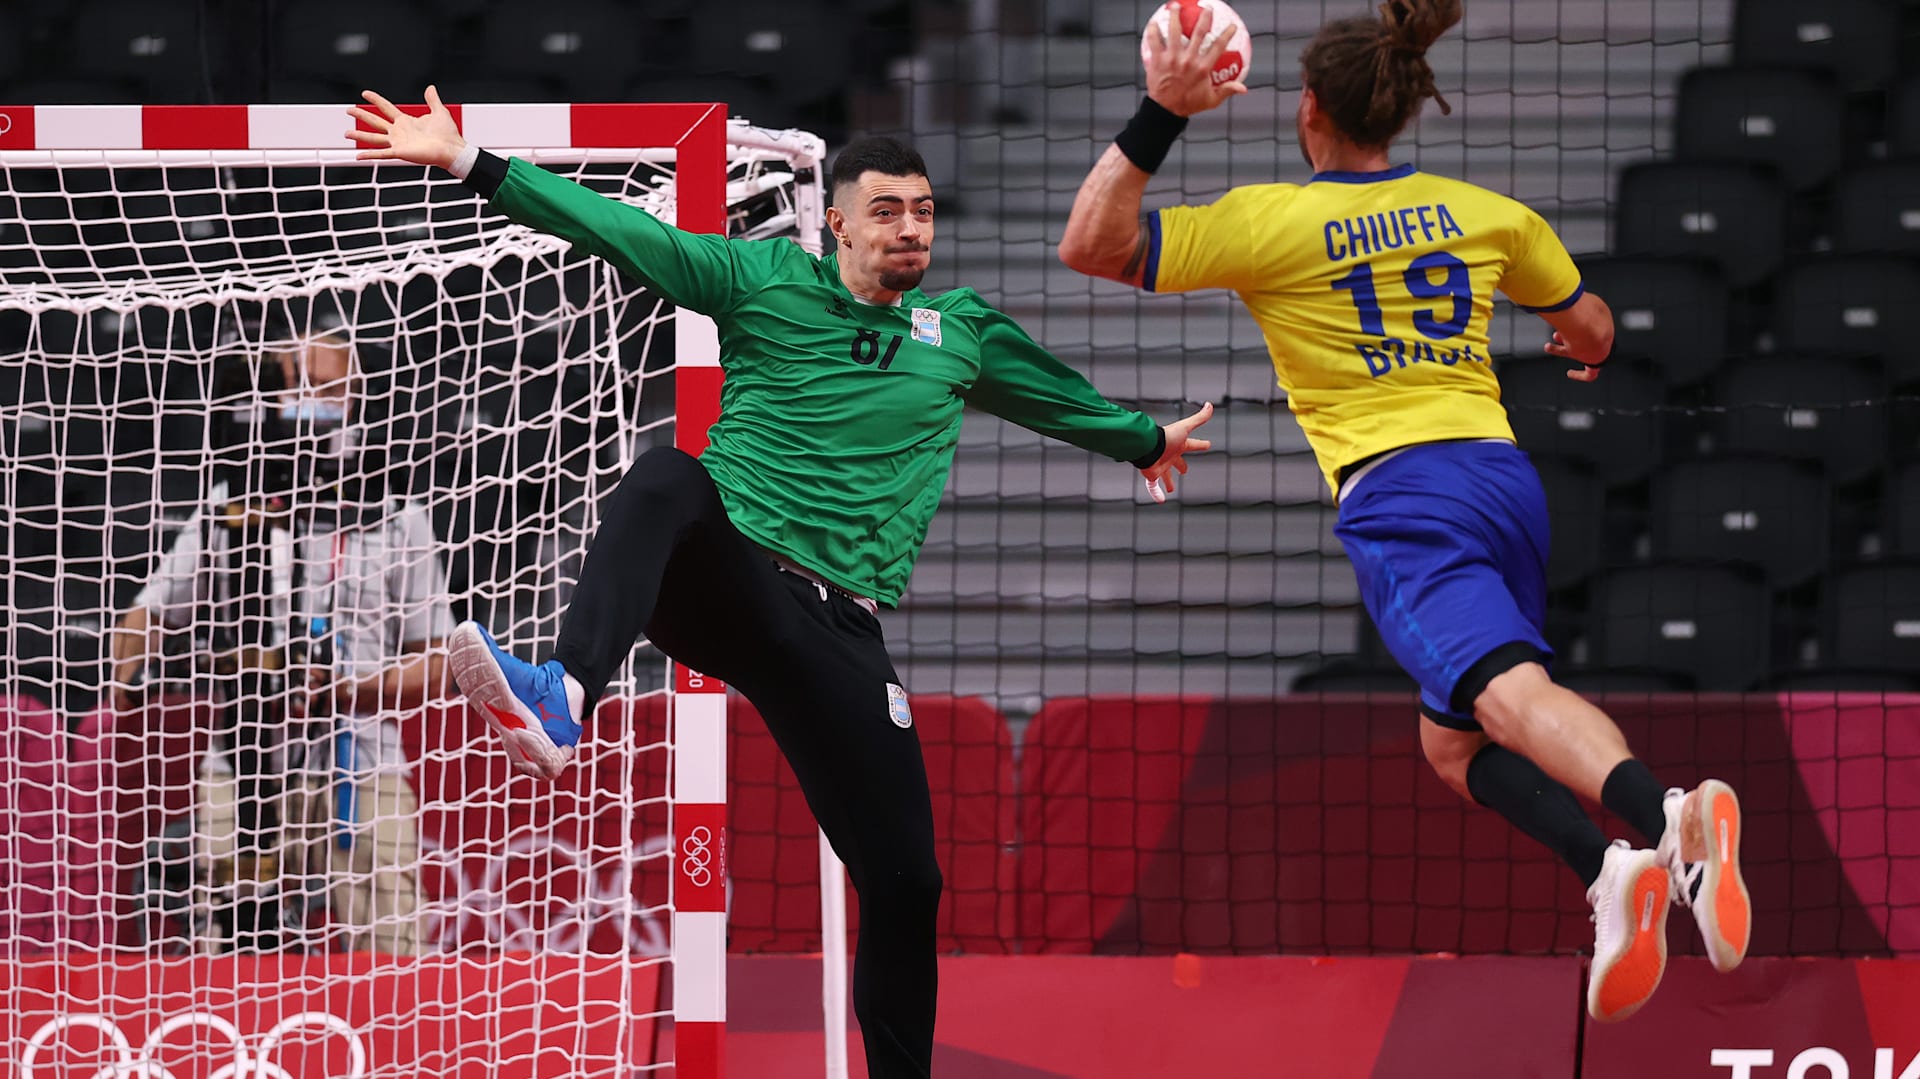 Noruega de Sagosen derrota Brasil na estreia do handebol